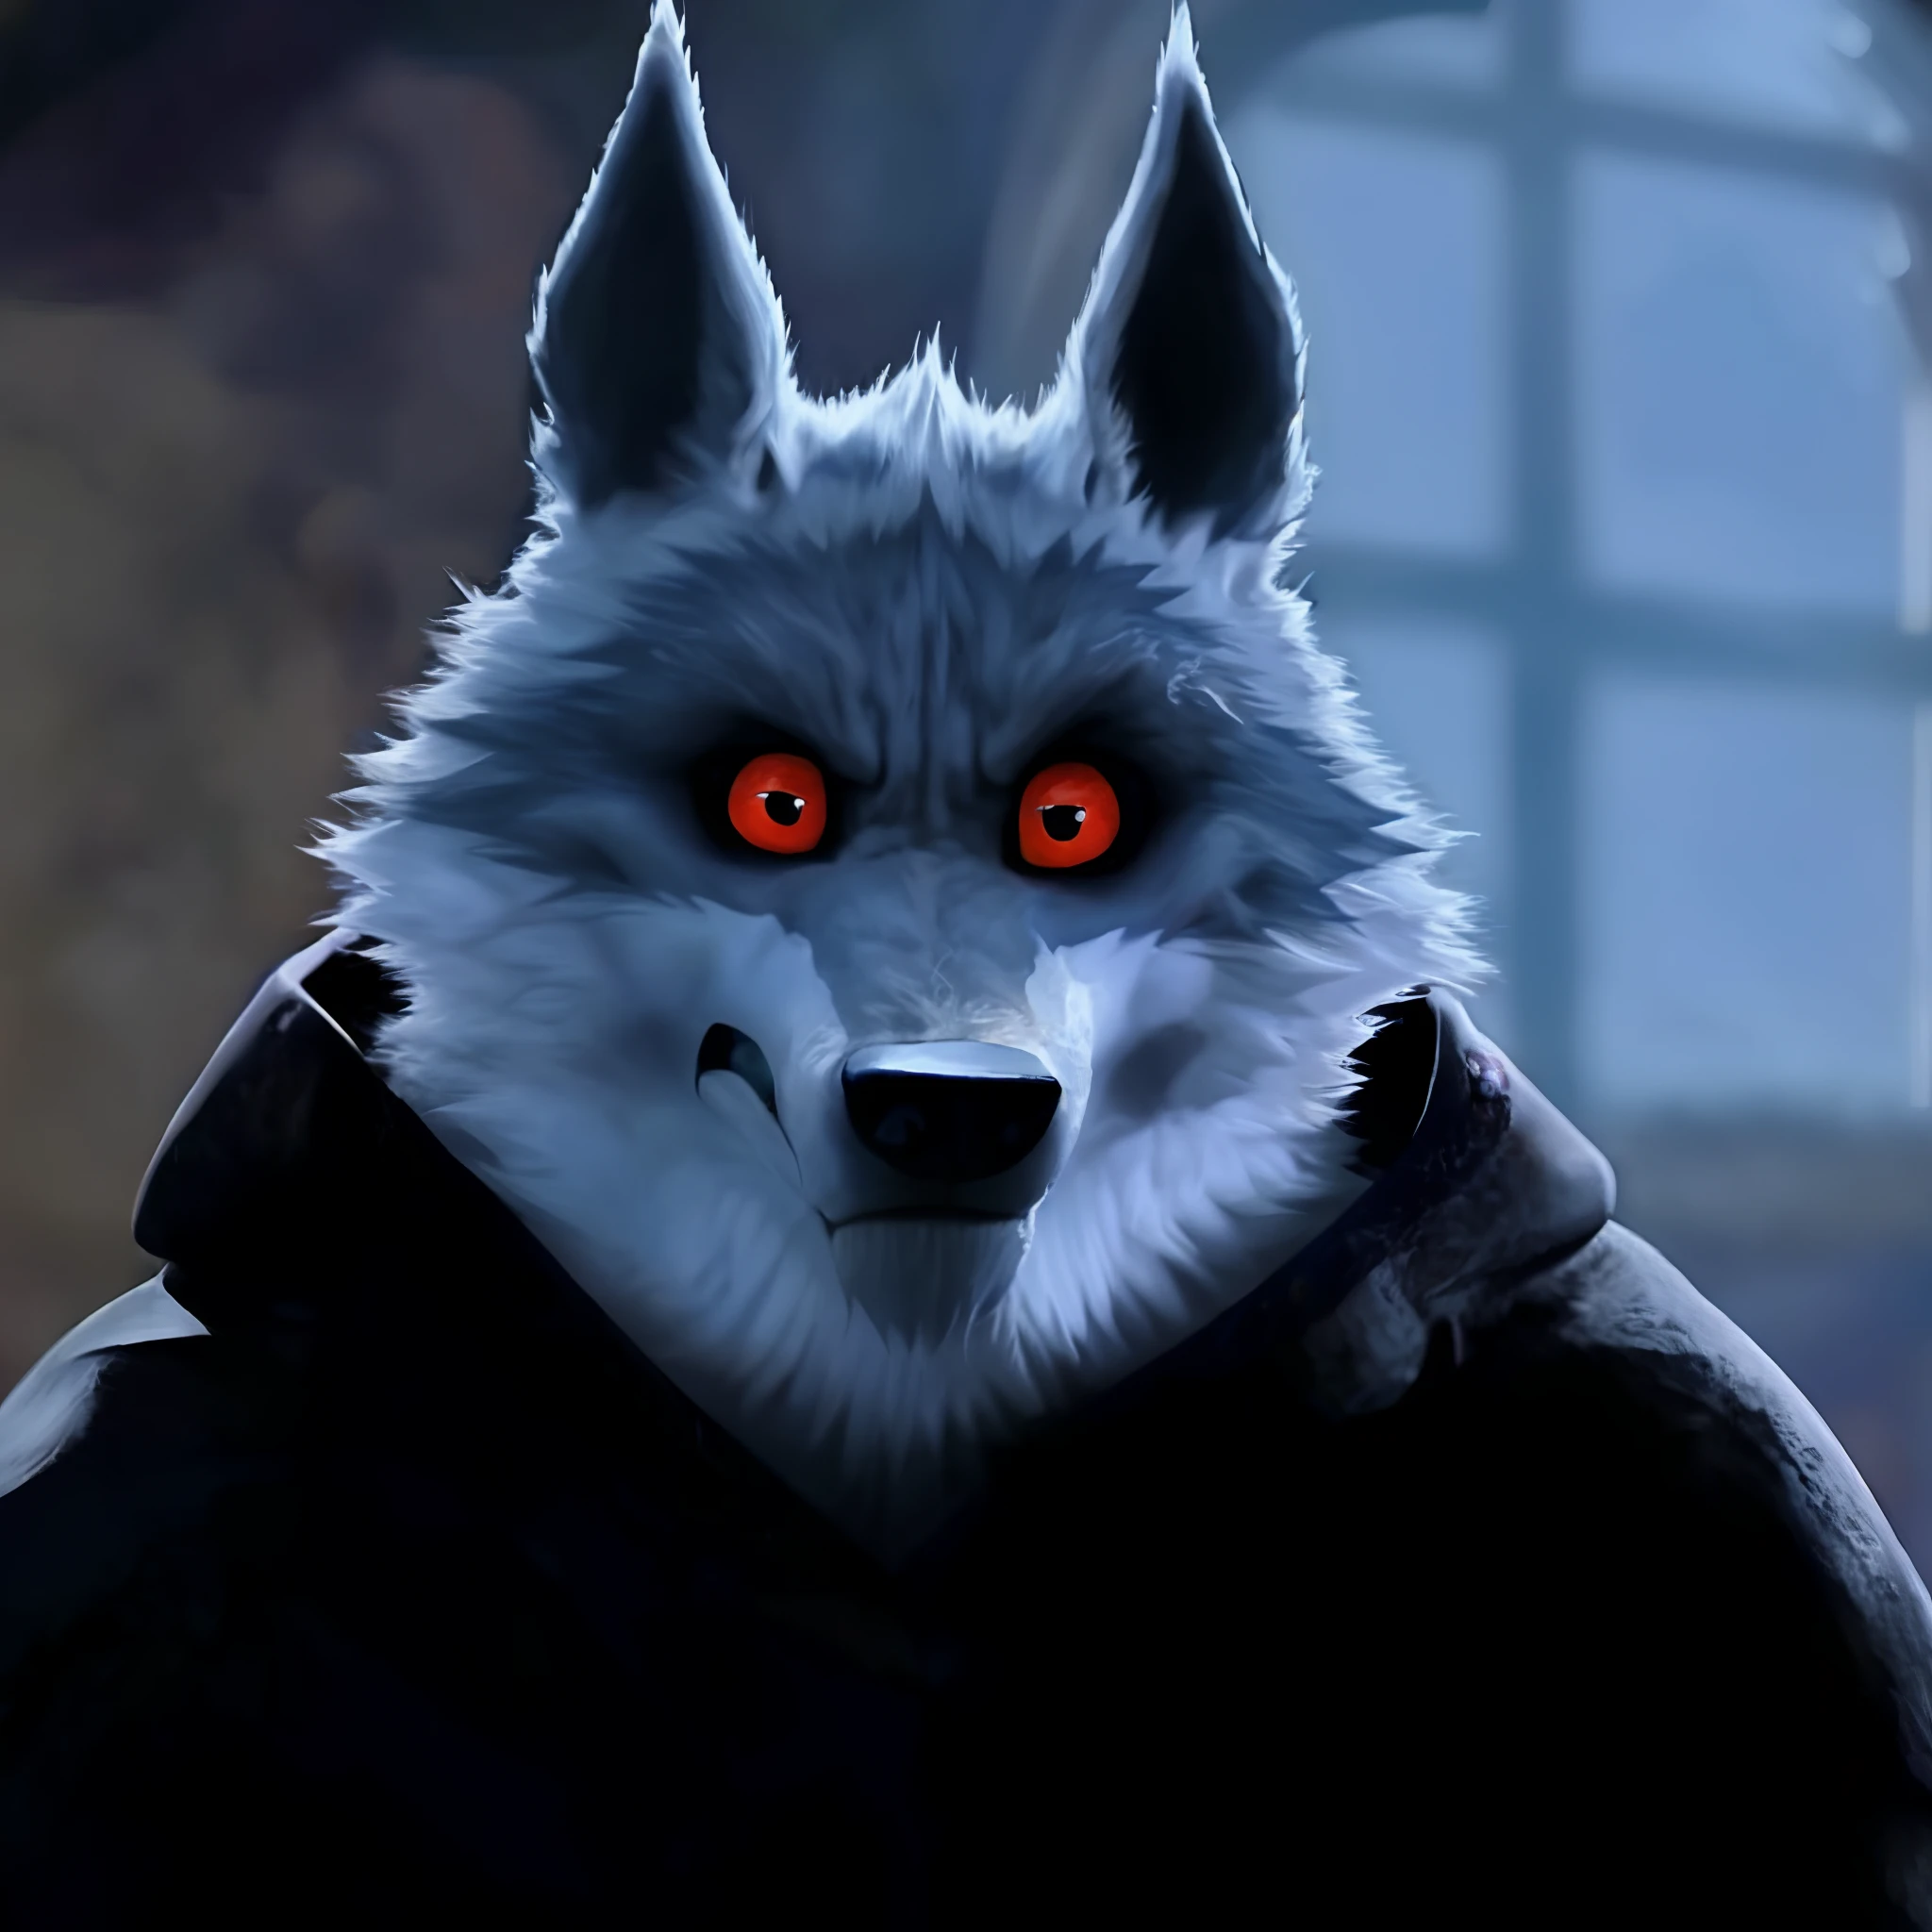 Death Wolf está mirando al espectador serio y sin paciencia sus ojos están rojos y hermoso está enojado todo el tiempo